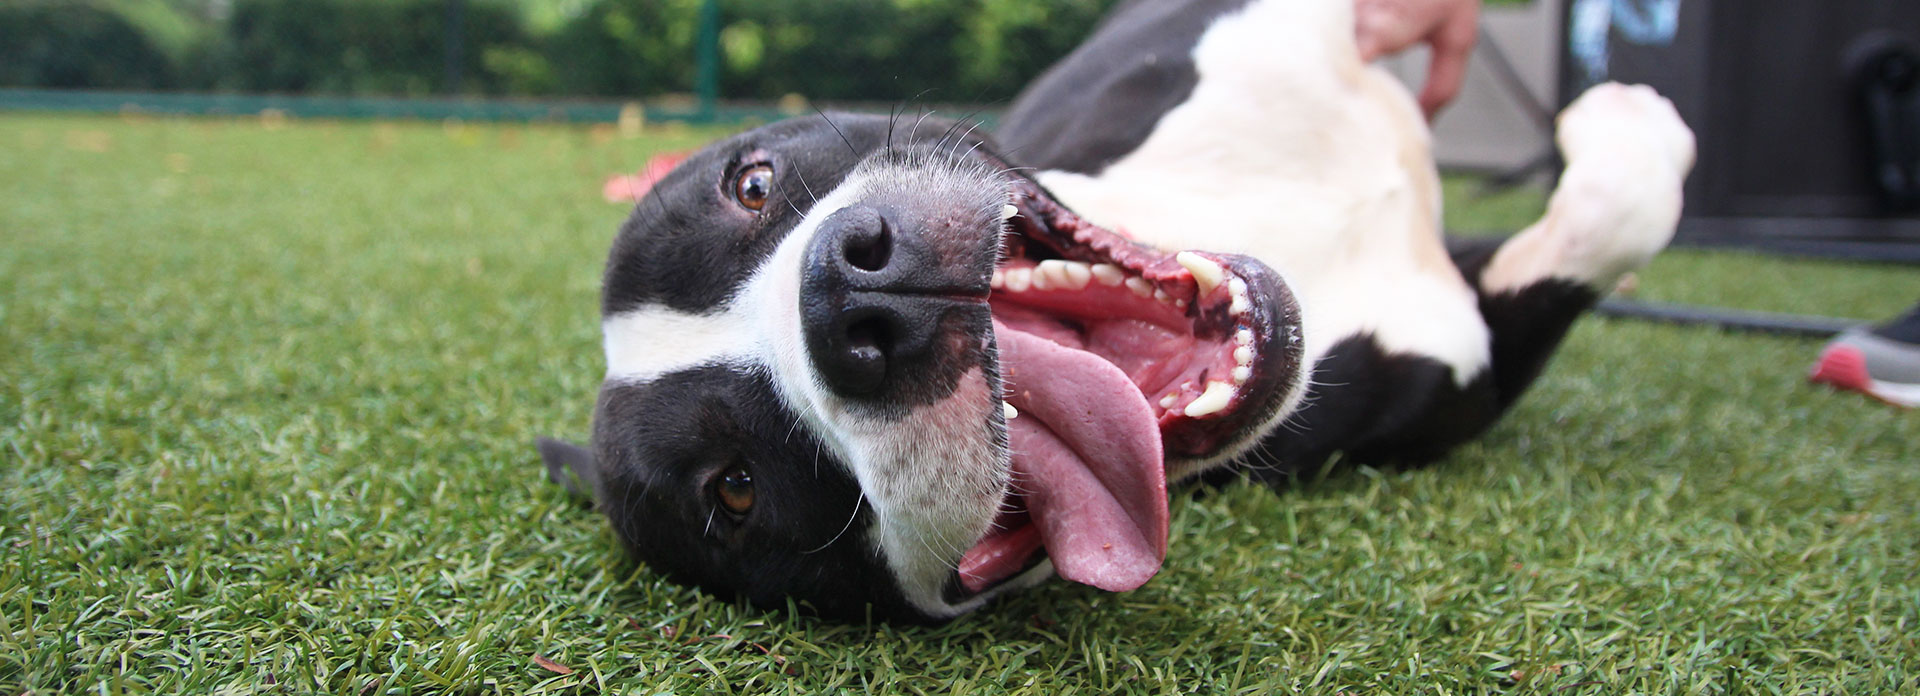 Adopt a Dog | Atlanta Humane Society